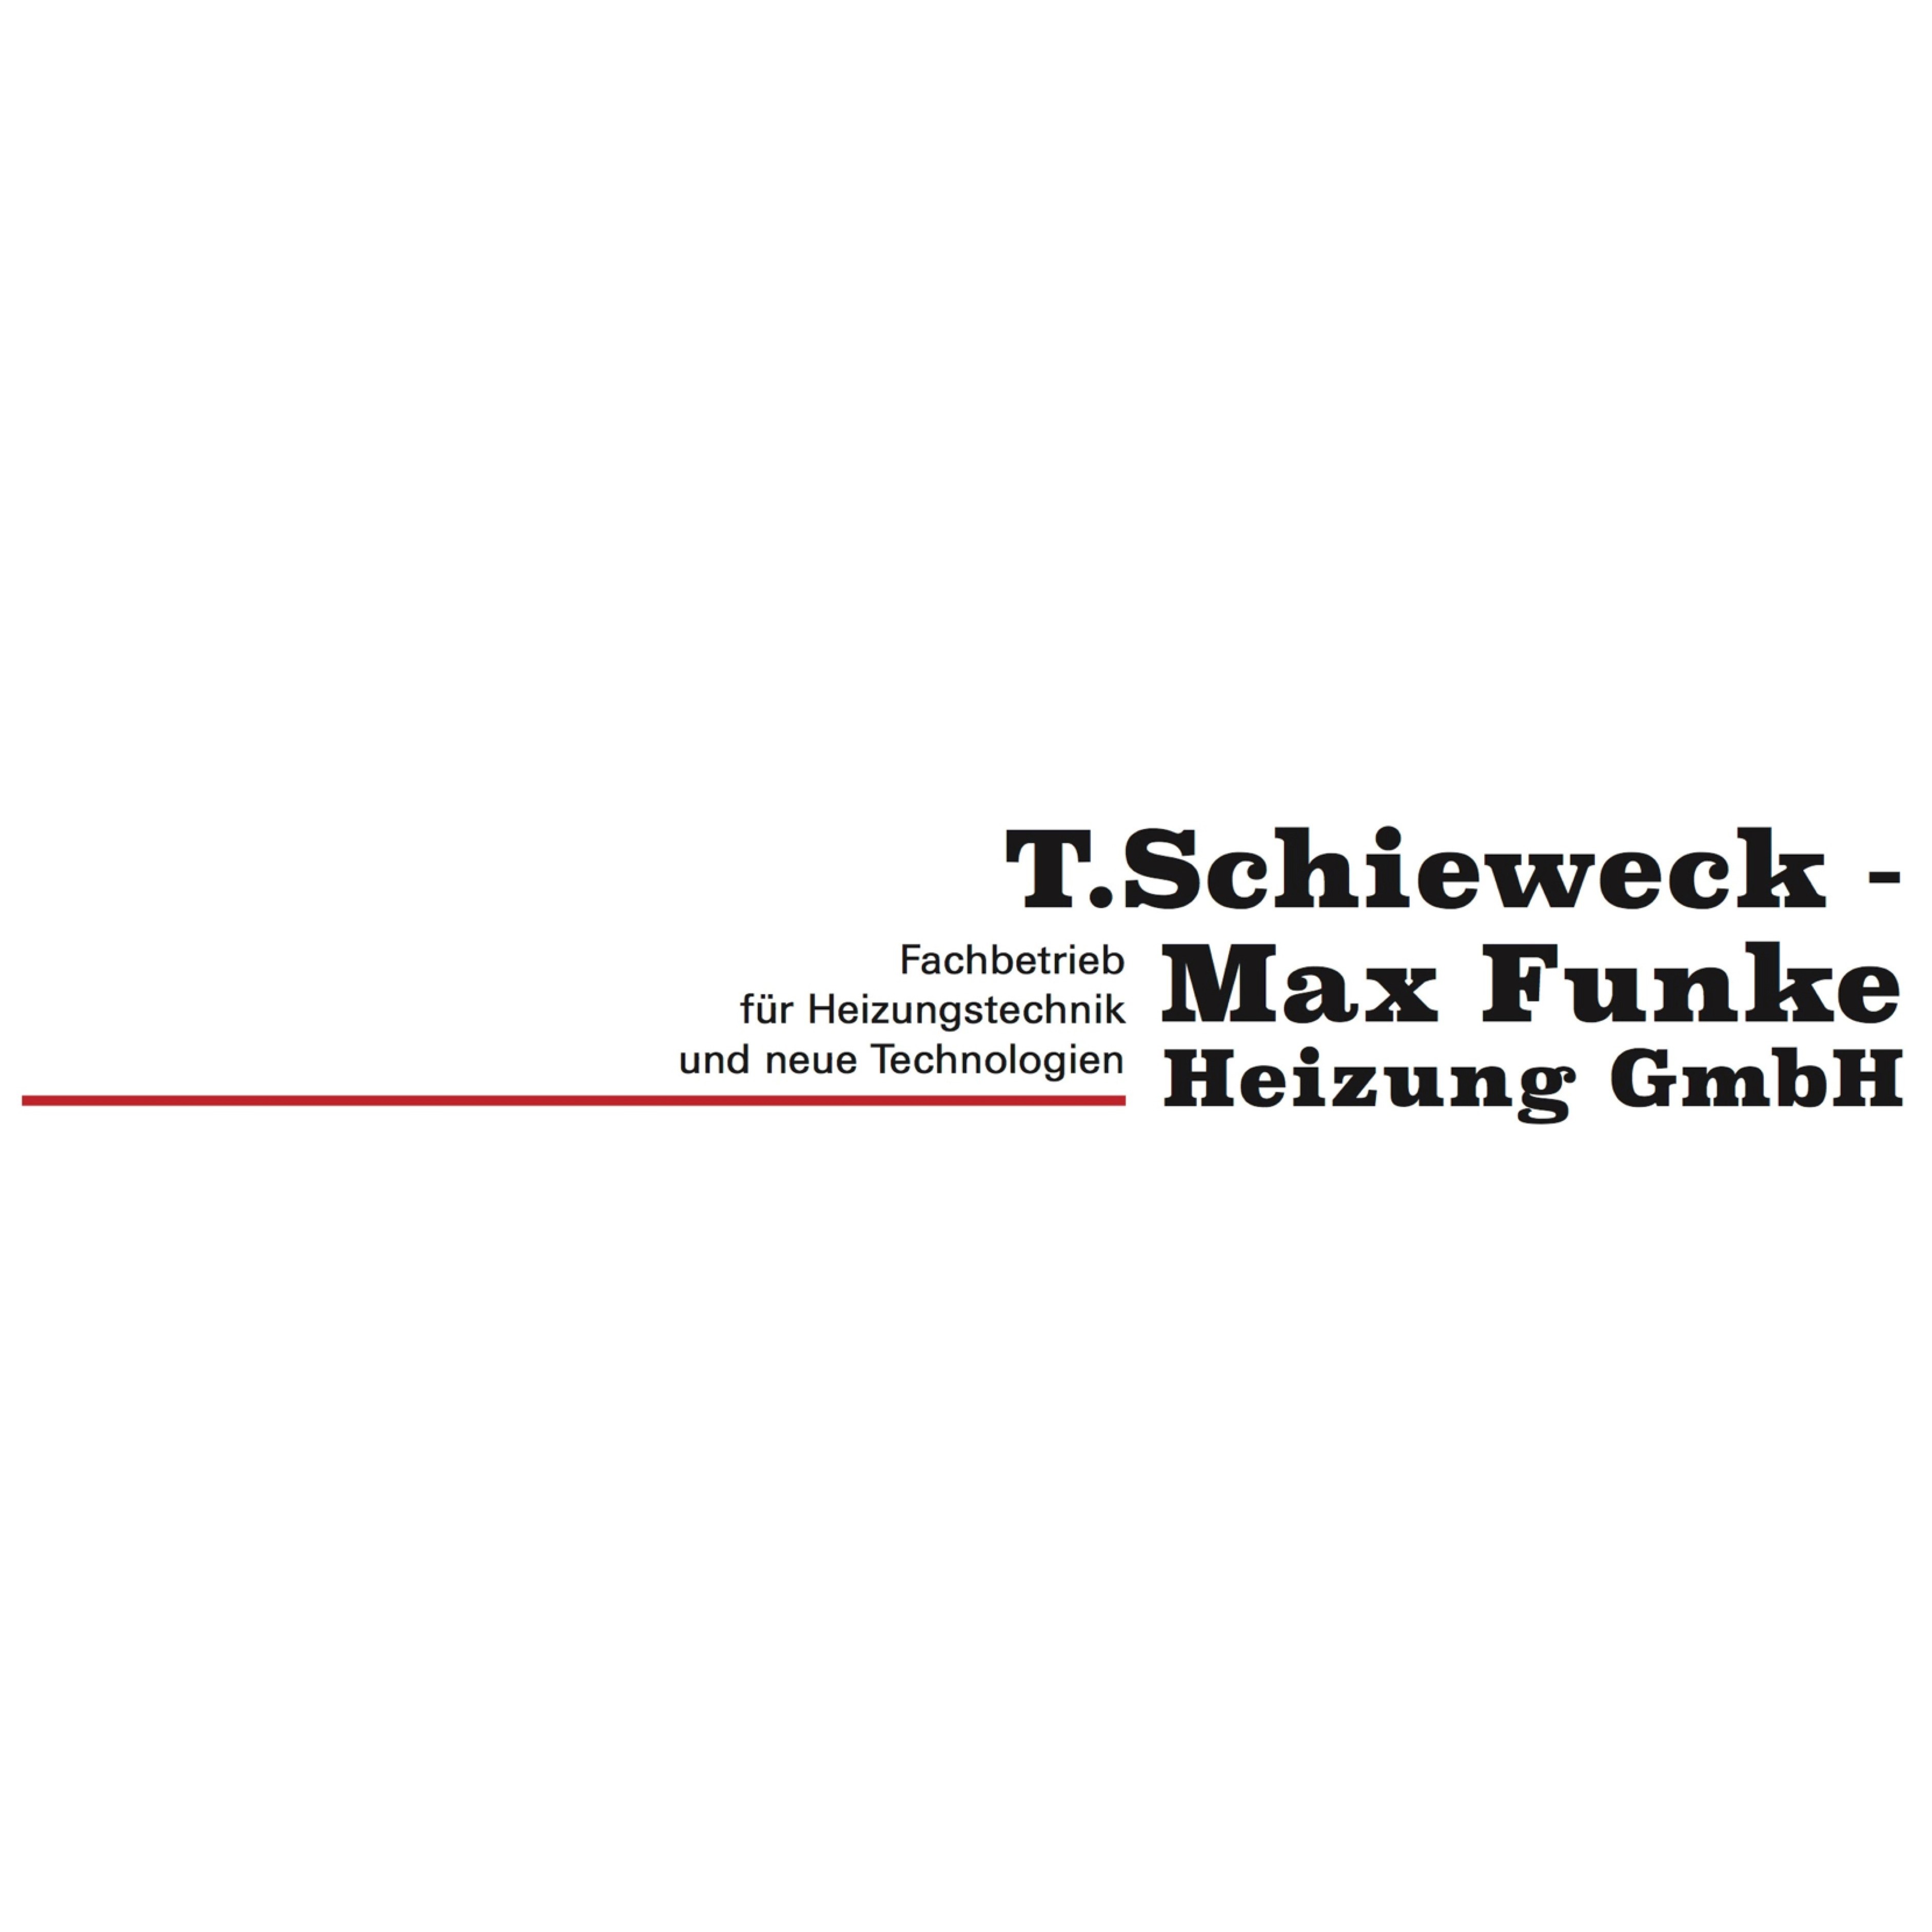 Logo T. Schieweck - Max Funke Heizung GmbH